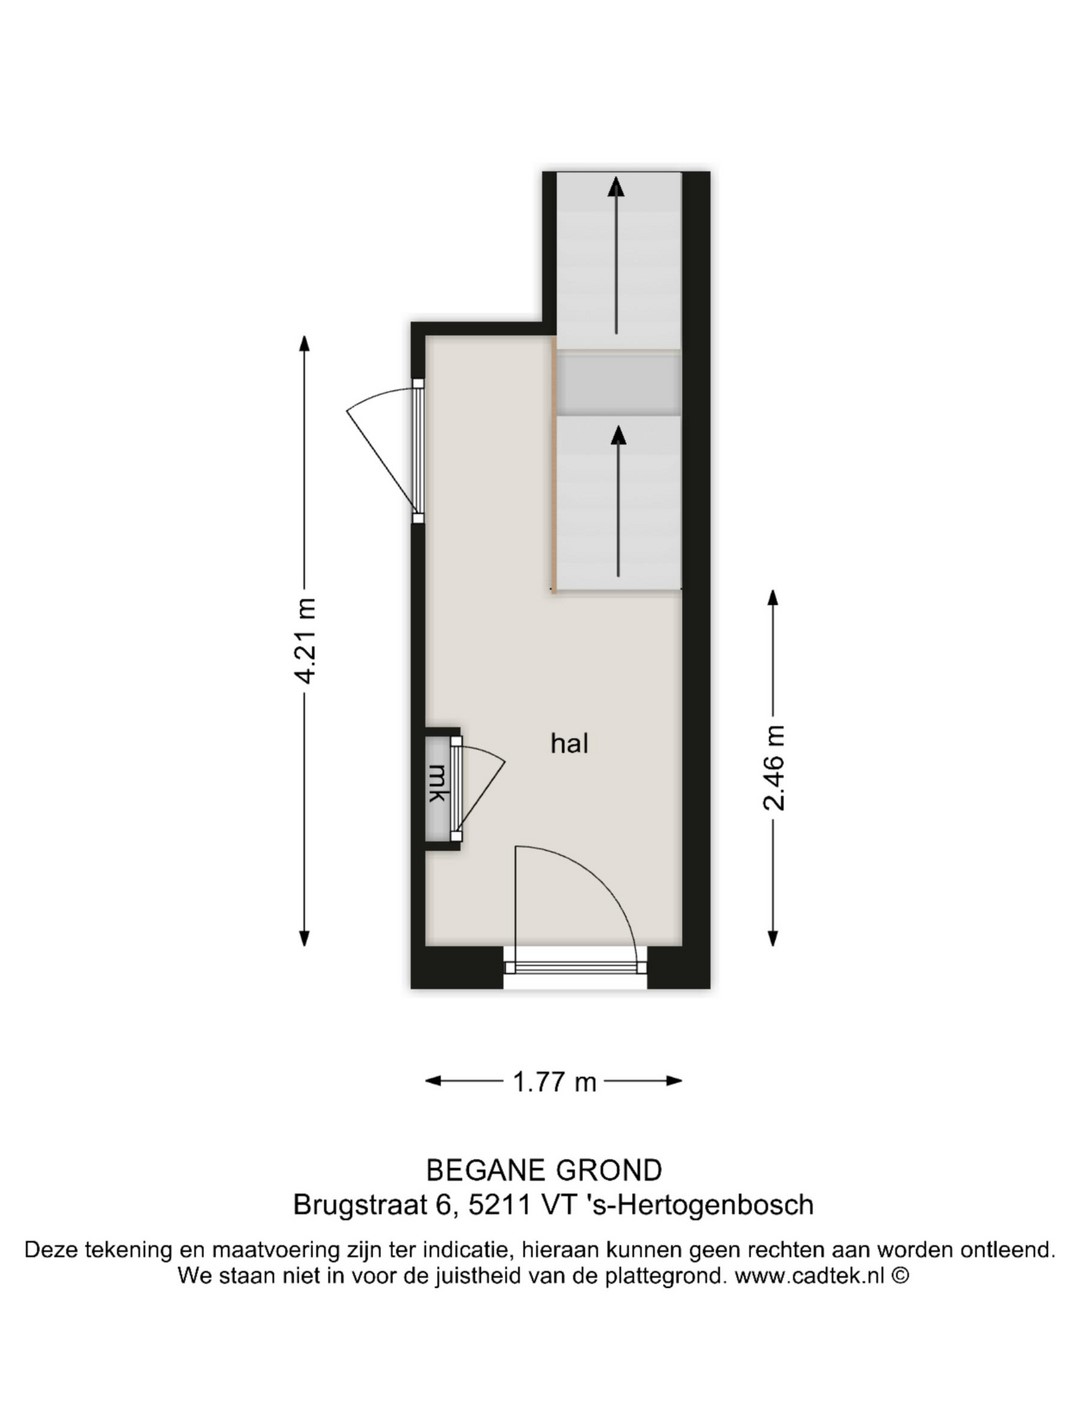 2 Bedrooms Bedrooms, ,1 BathroomBathrooms,Appartement,Te Koop,1207